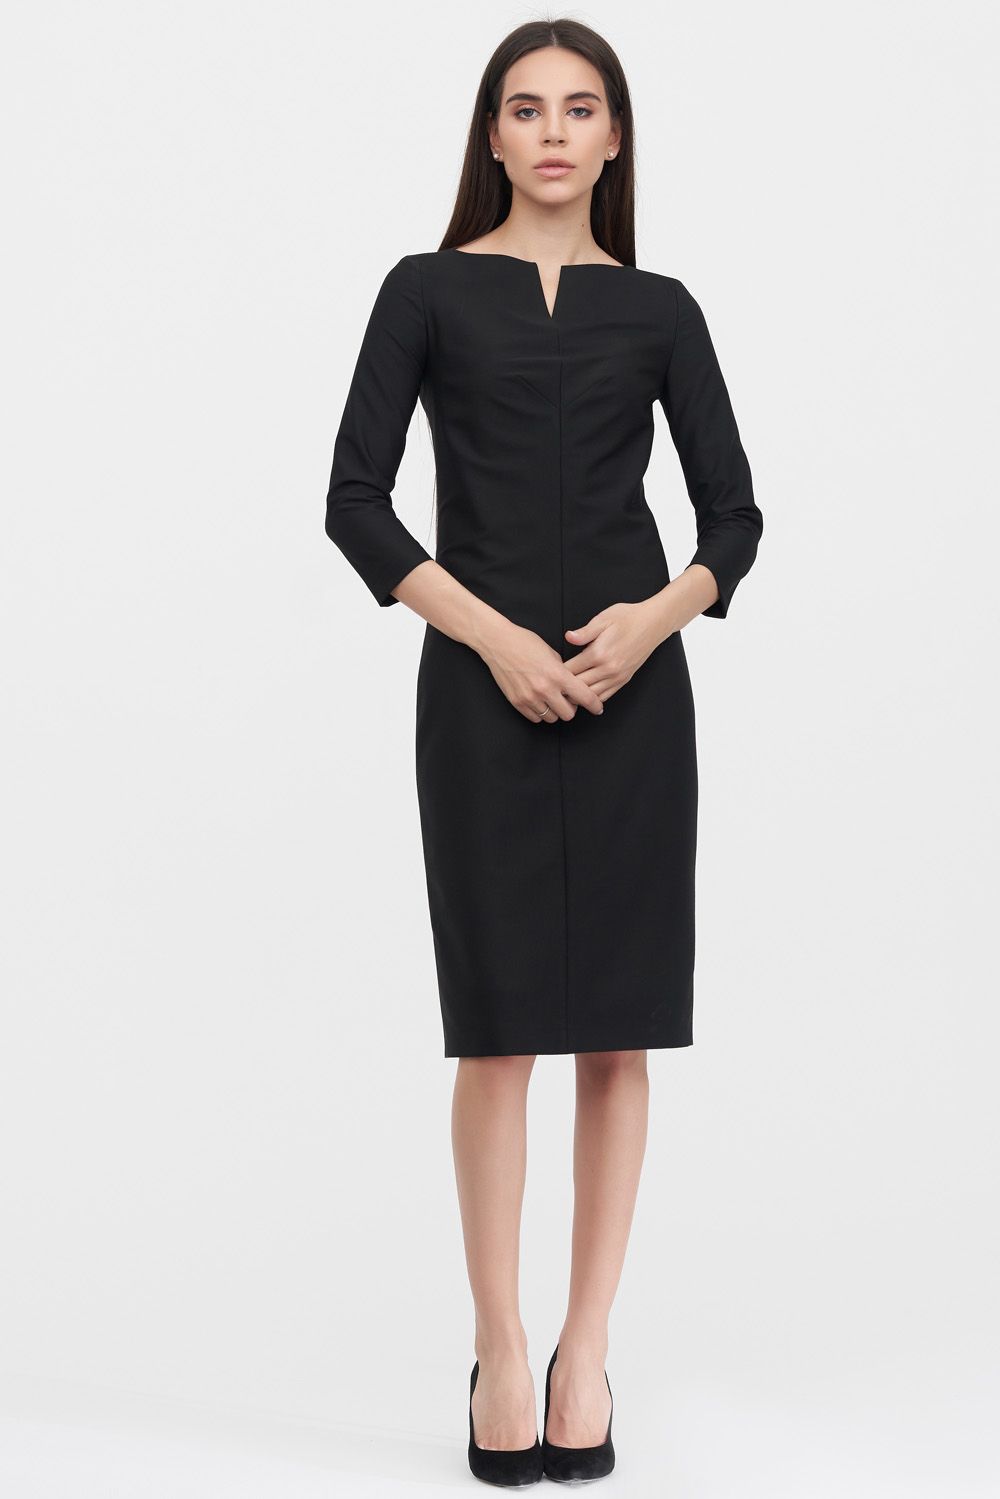 Базовое платье-футляр черного цвета